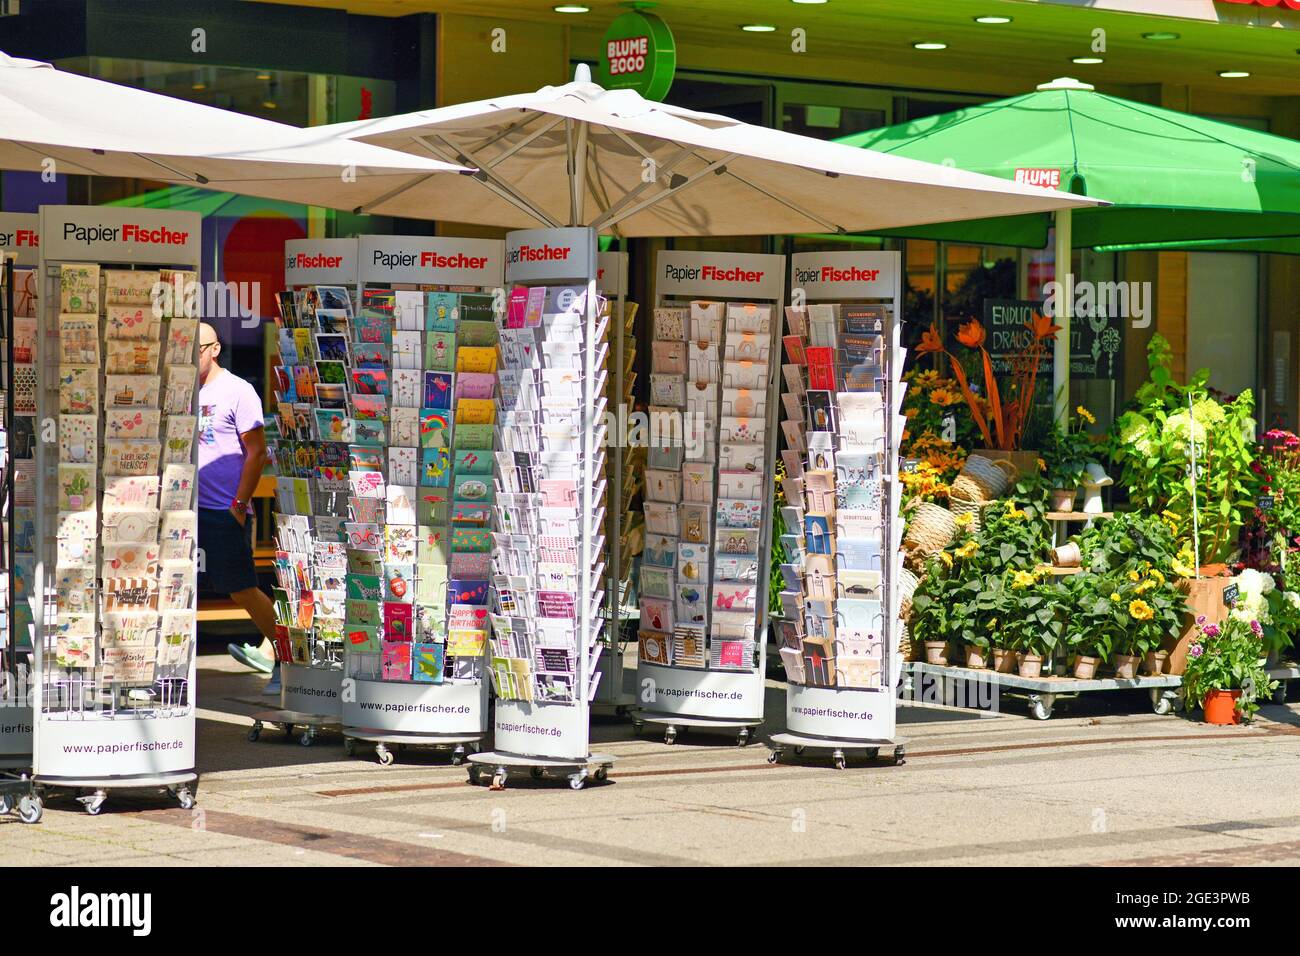 Karlsruhe, Deutschland - August 2021: Stand vor dem Schreibwarenladen Souvenirshop, der verschiedene Postkarten und Geburtstagskarten verkauft Stockfoto